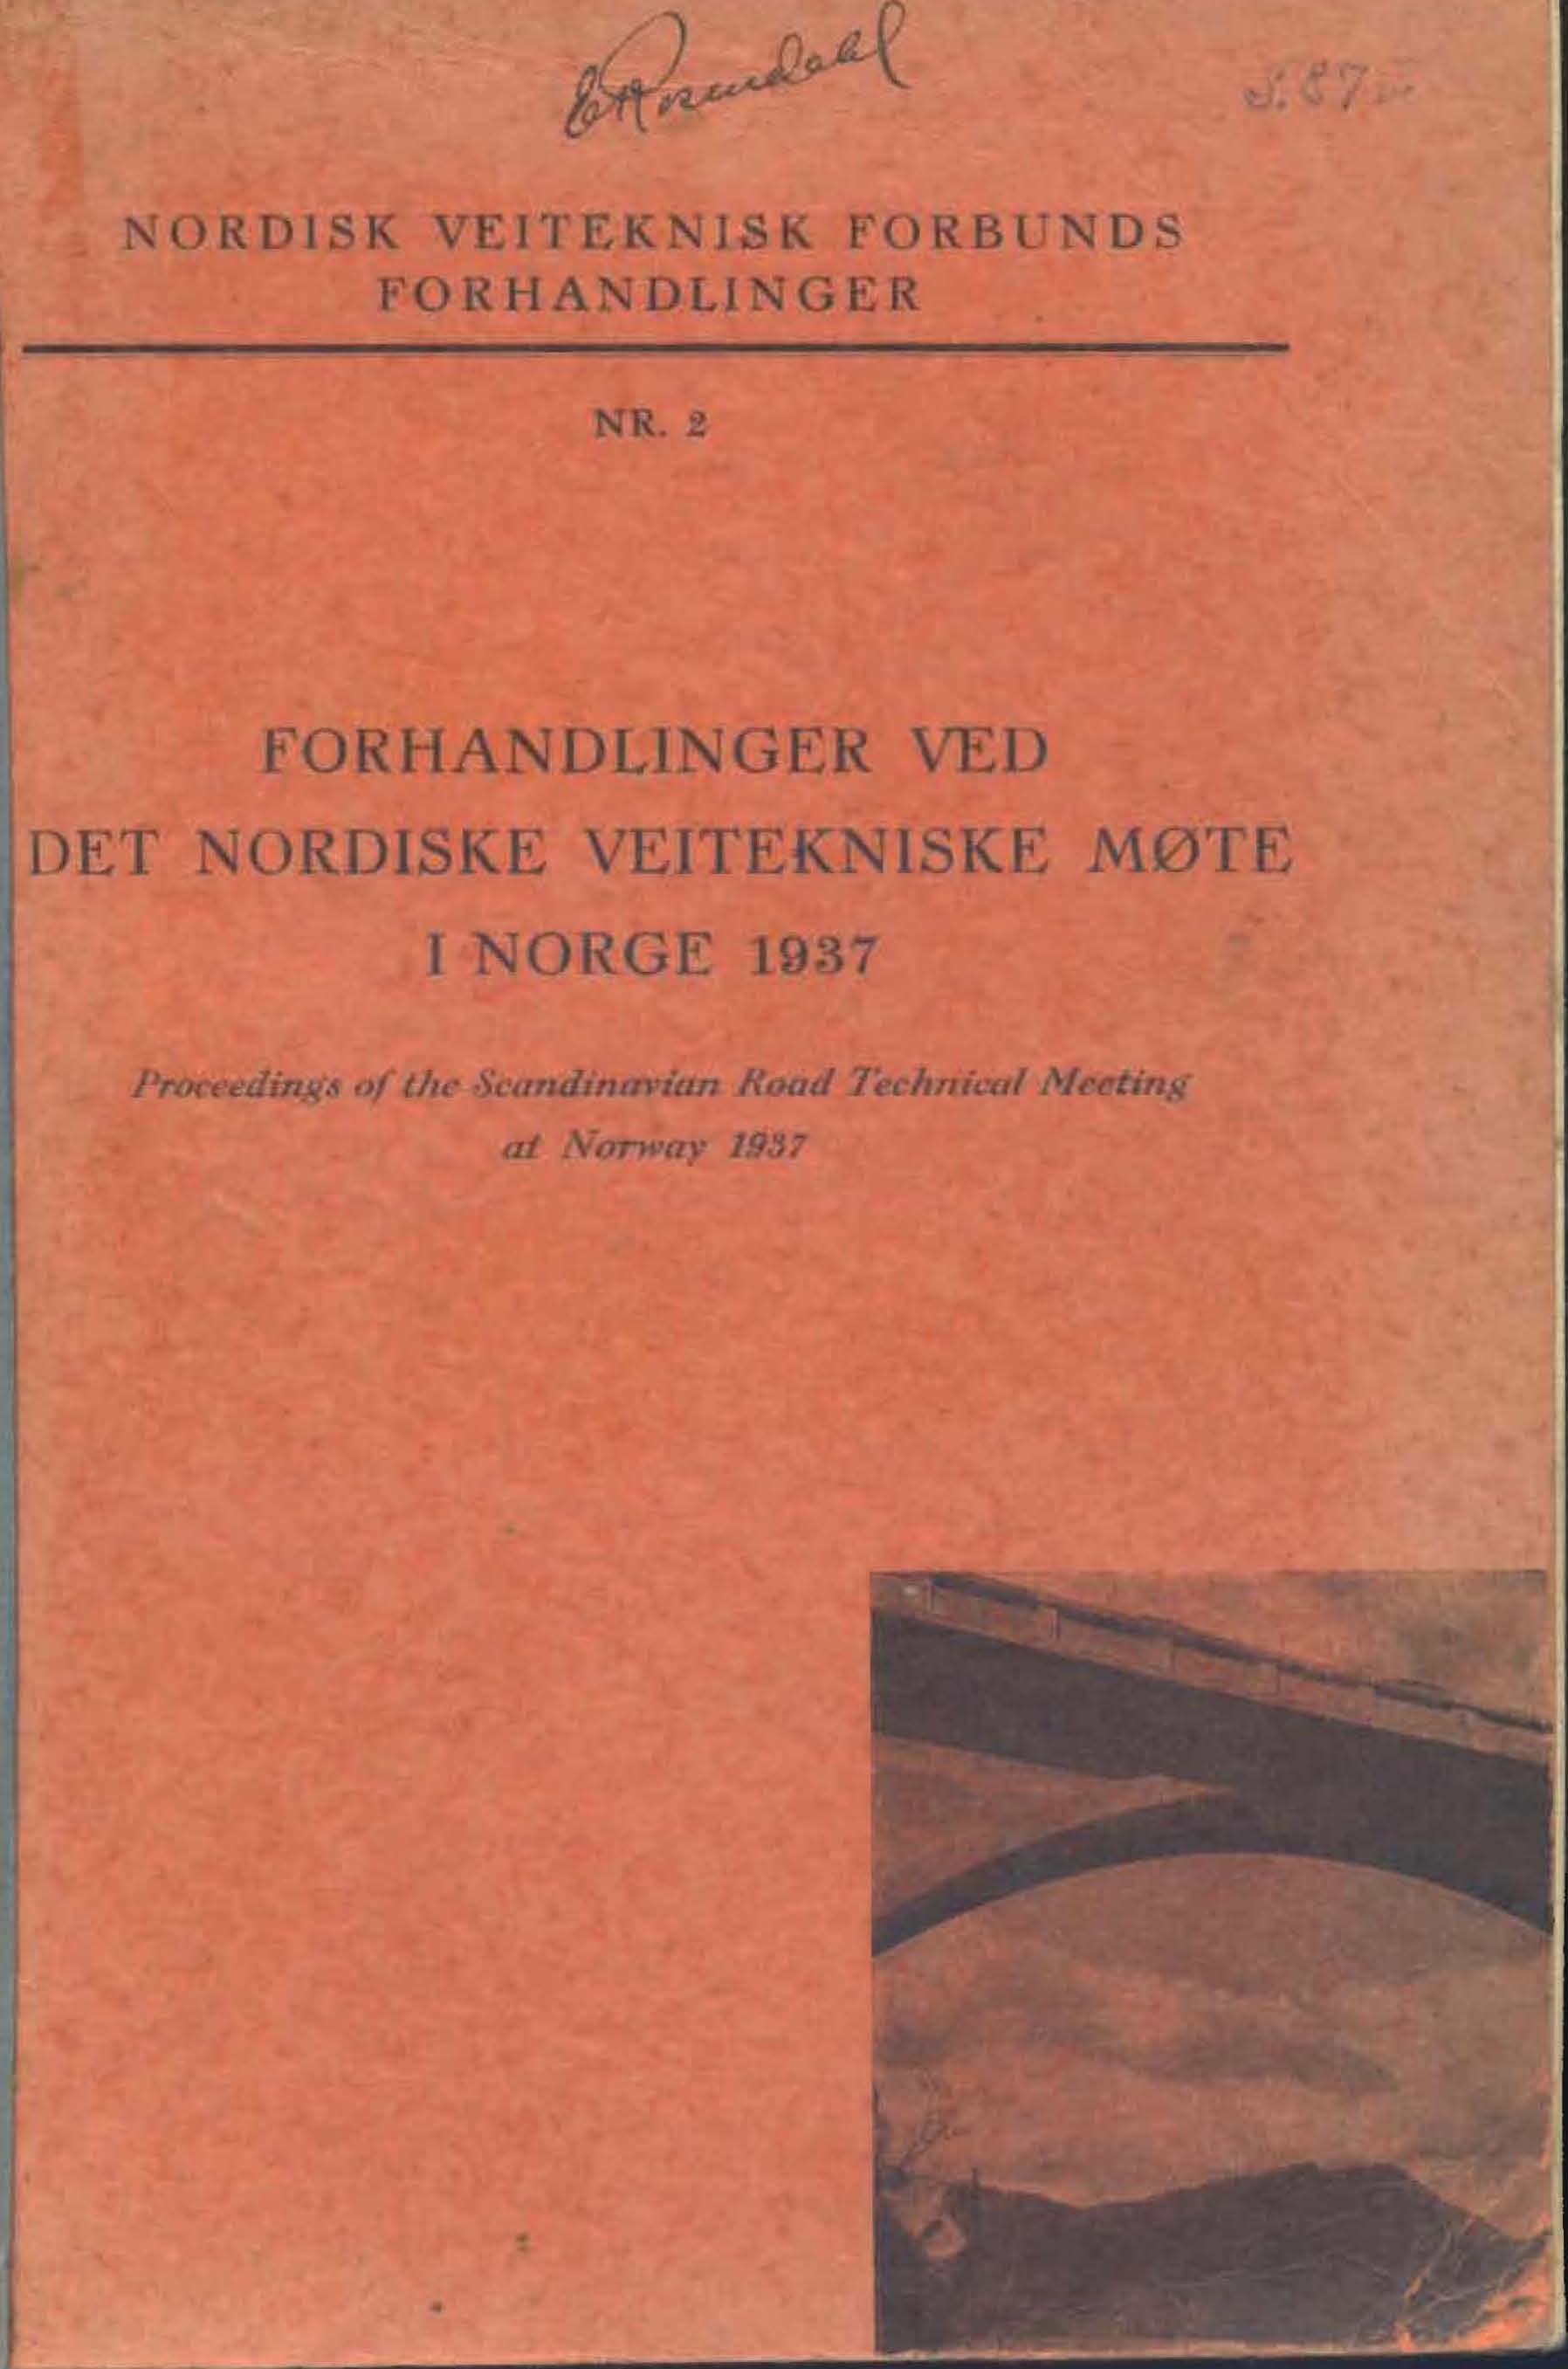 Forhandlinger Ved det Nordiske Veitekniske Mote i Norge 1937